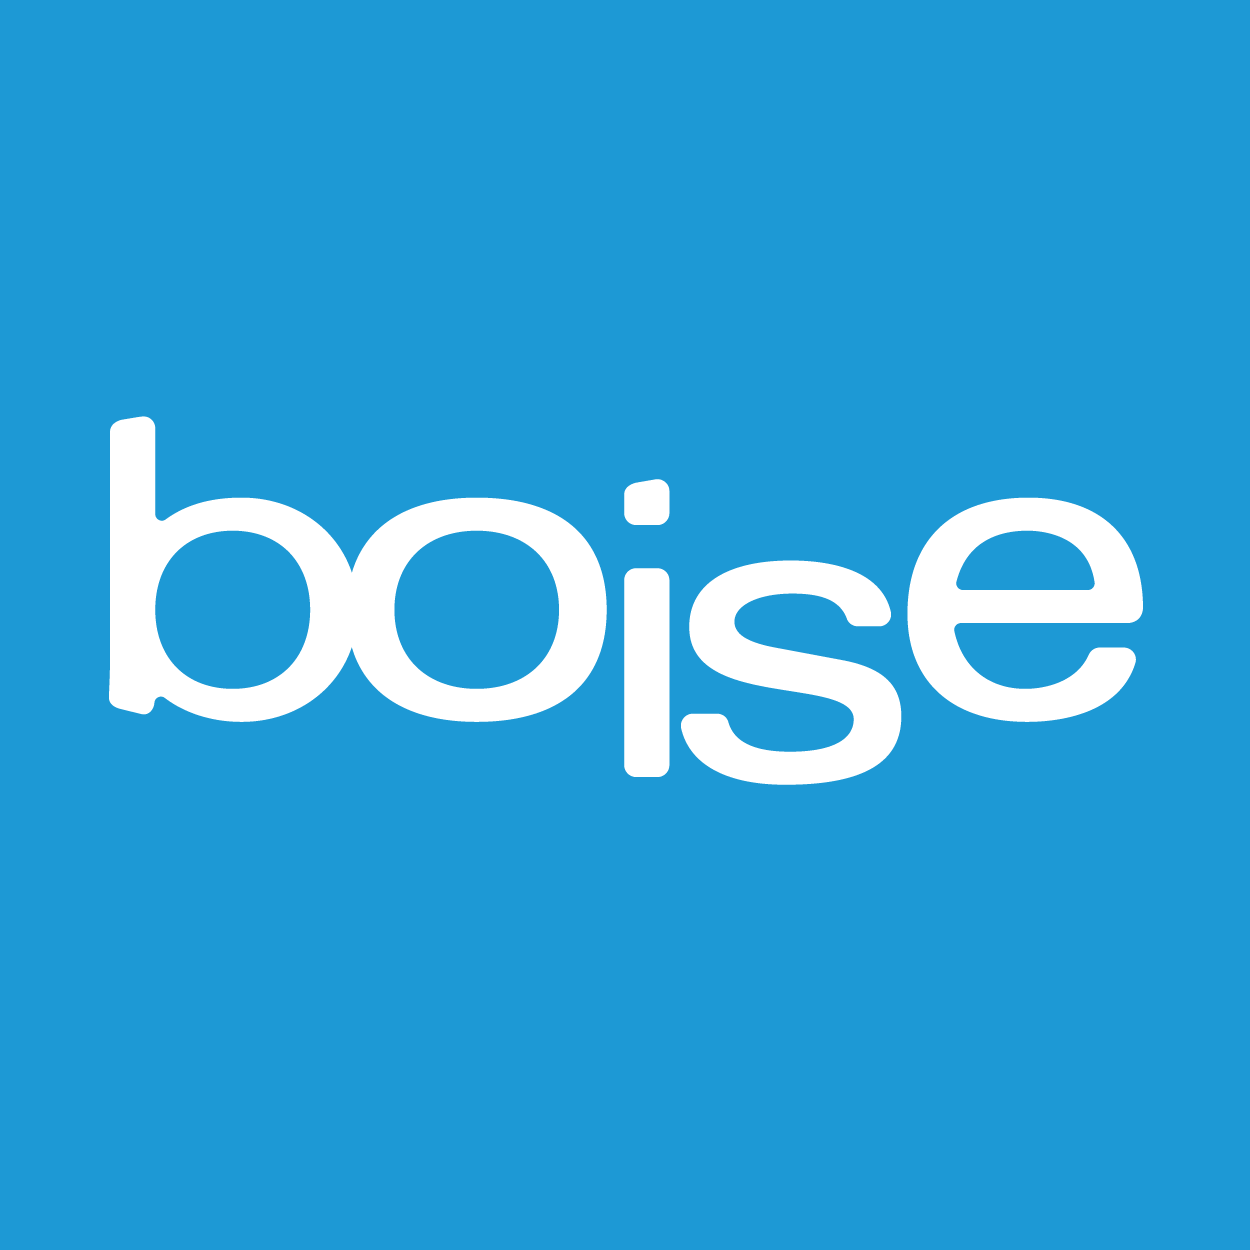 4806 Boise Convention & Visitors Bureau Logo